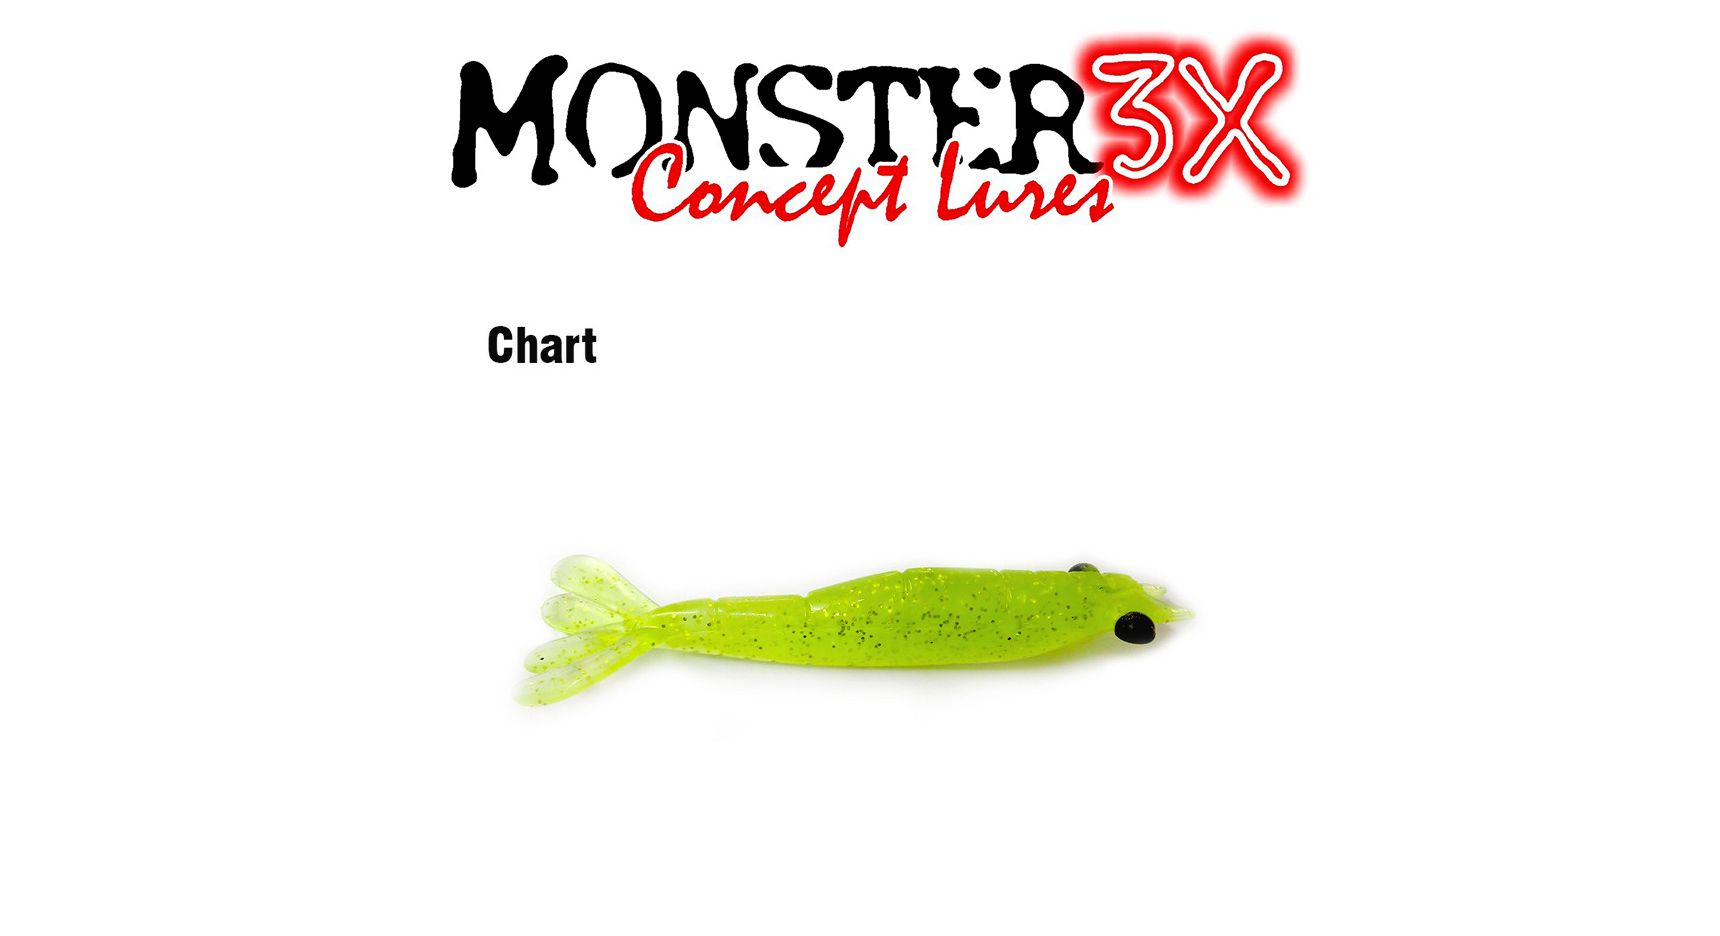 Isca Artificial Soft Monster 3X Ultra Soft (7,5 cm) 3 Unidades - Várias Cores - Life Pesca - Sua loja de Pesca, Camping e Lazer